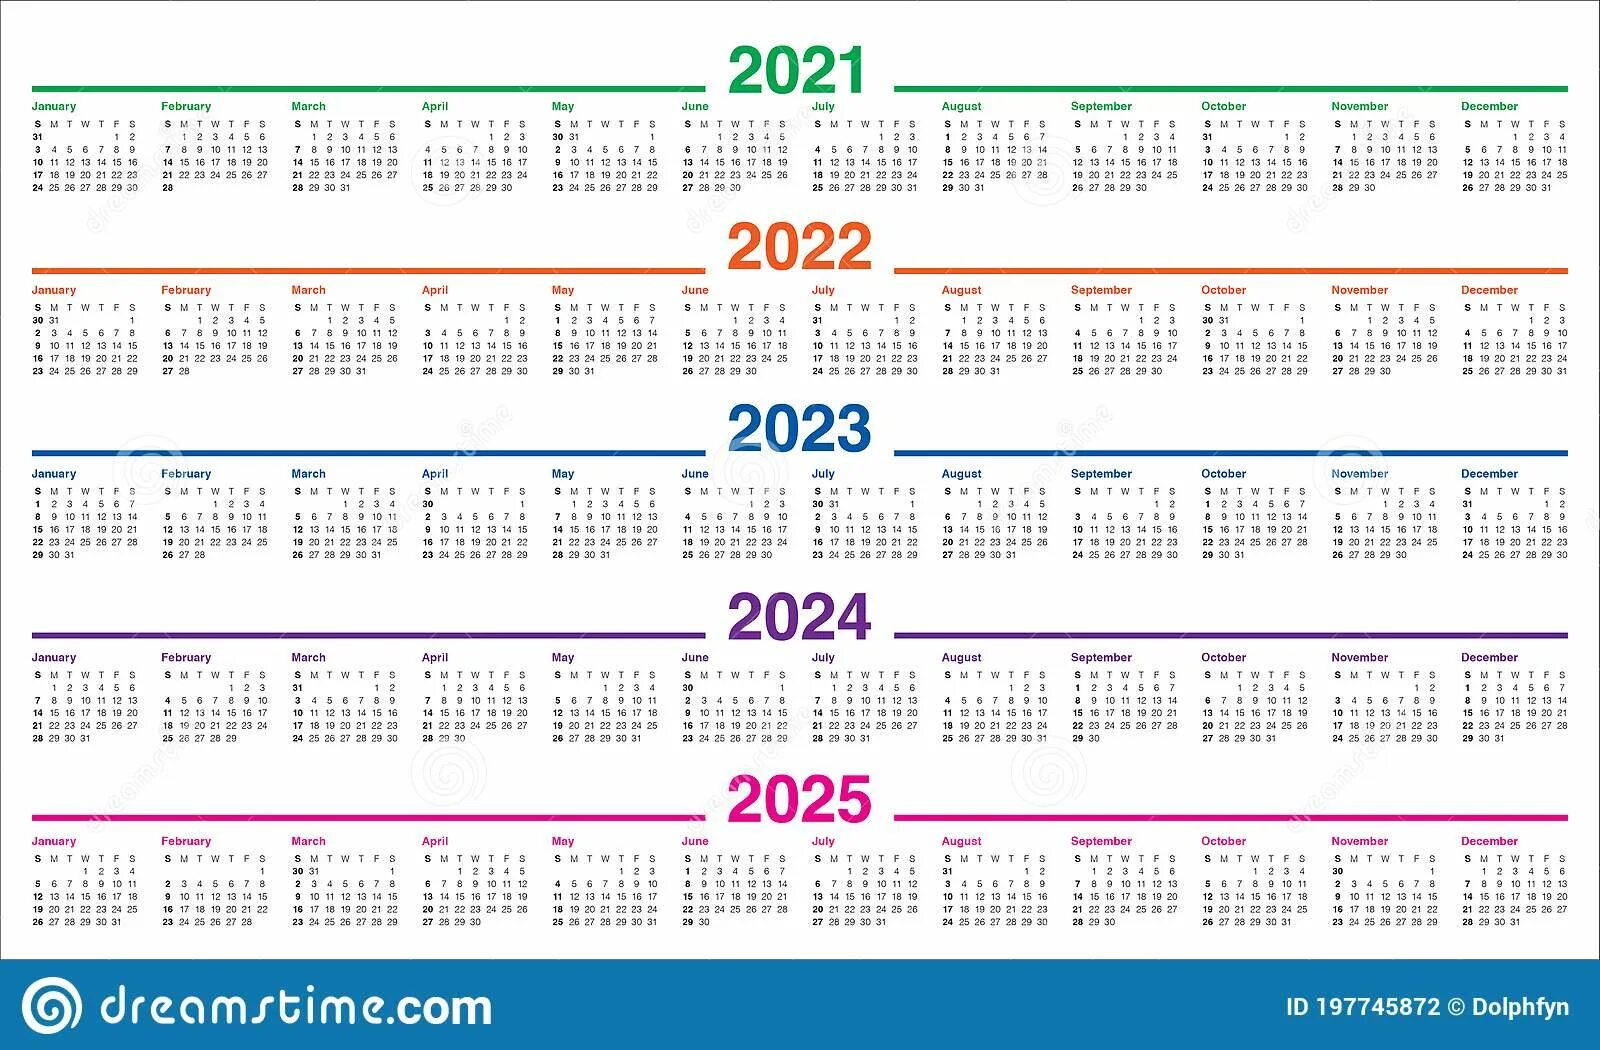 Календарь 2020 2021 год. Календарь 2018 2019 2020 2021. Календарь 2018 2019 2020 2021 2022 2023. Календарная сетка 2022 2023. Календарь 2021 2022 на одном листе.